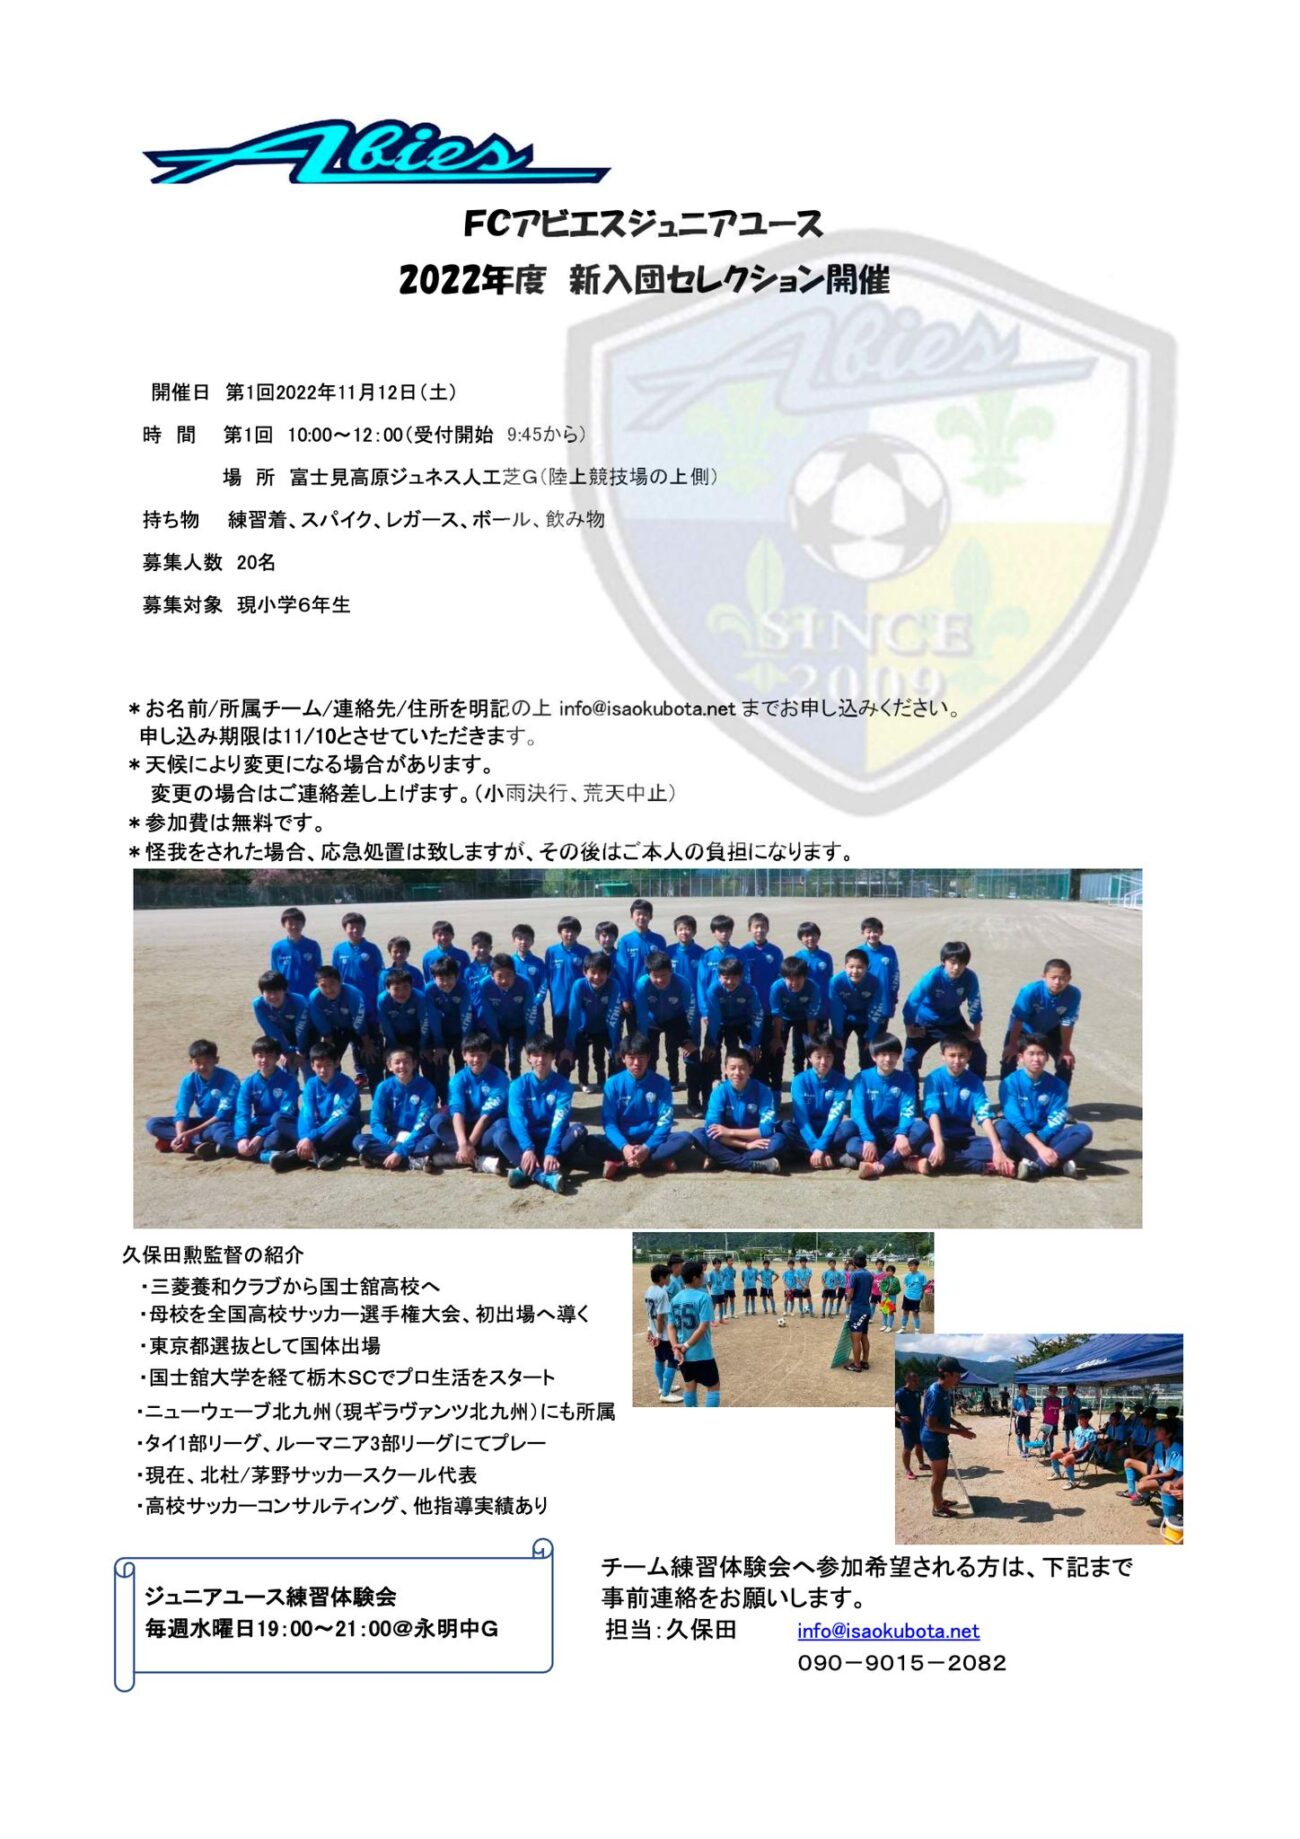 中学生サッカー-FCアビエスジュニアユース-アビエスジュニアユースセレクションのお知らせ